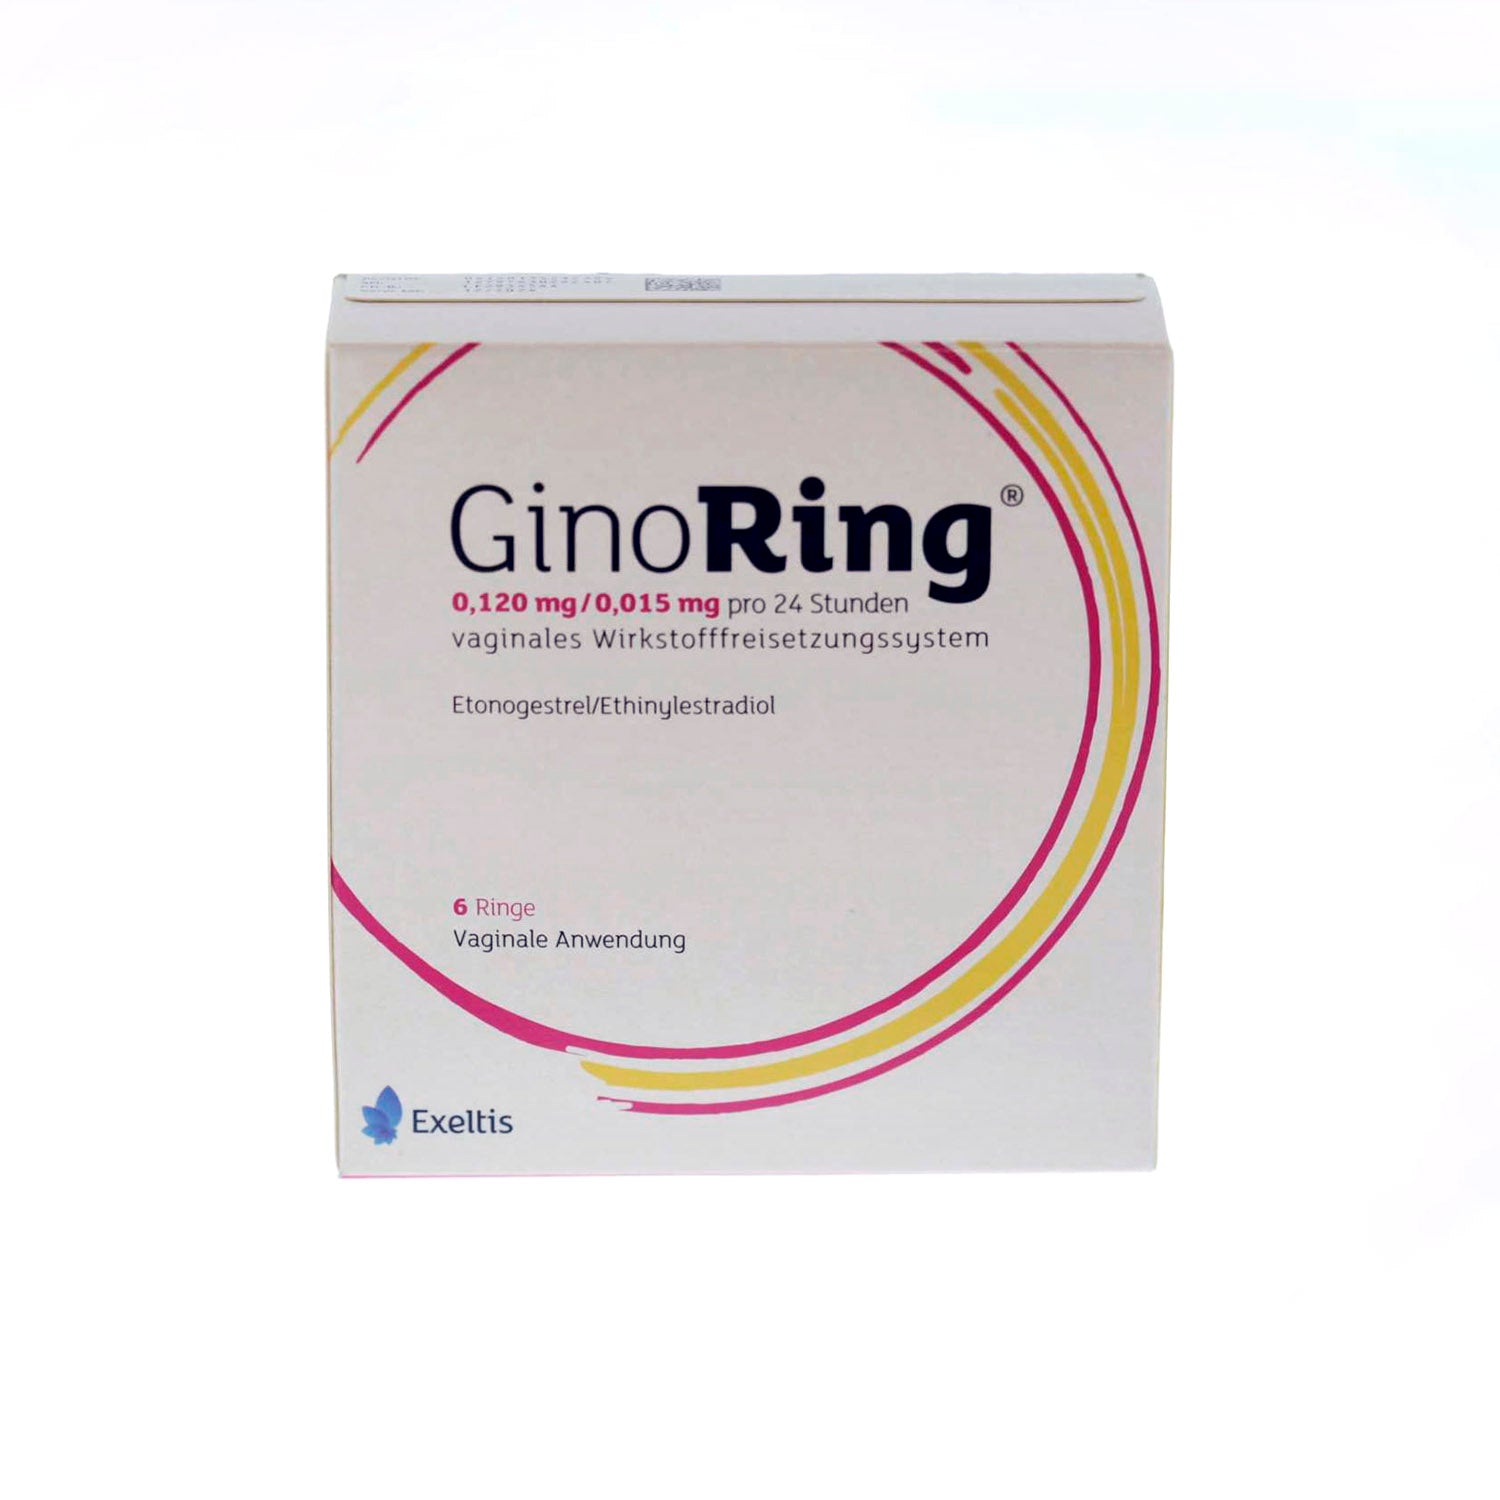 Ginoring 0.120/0.015 mg 24h